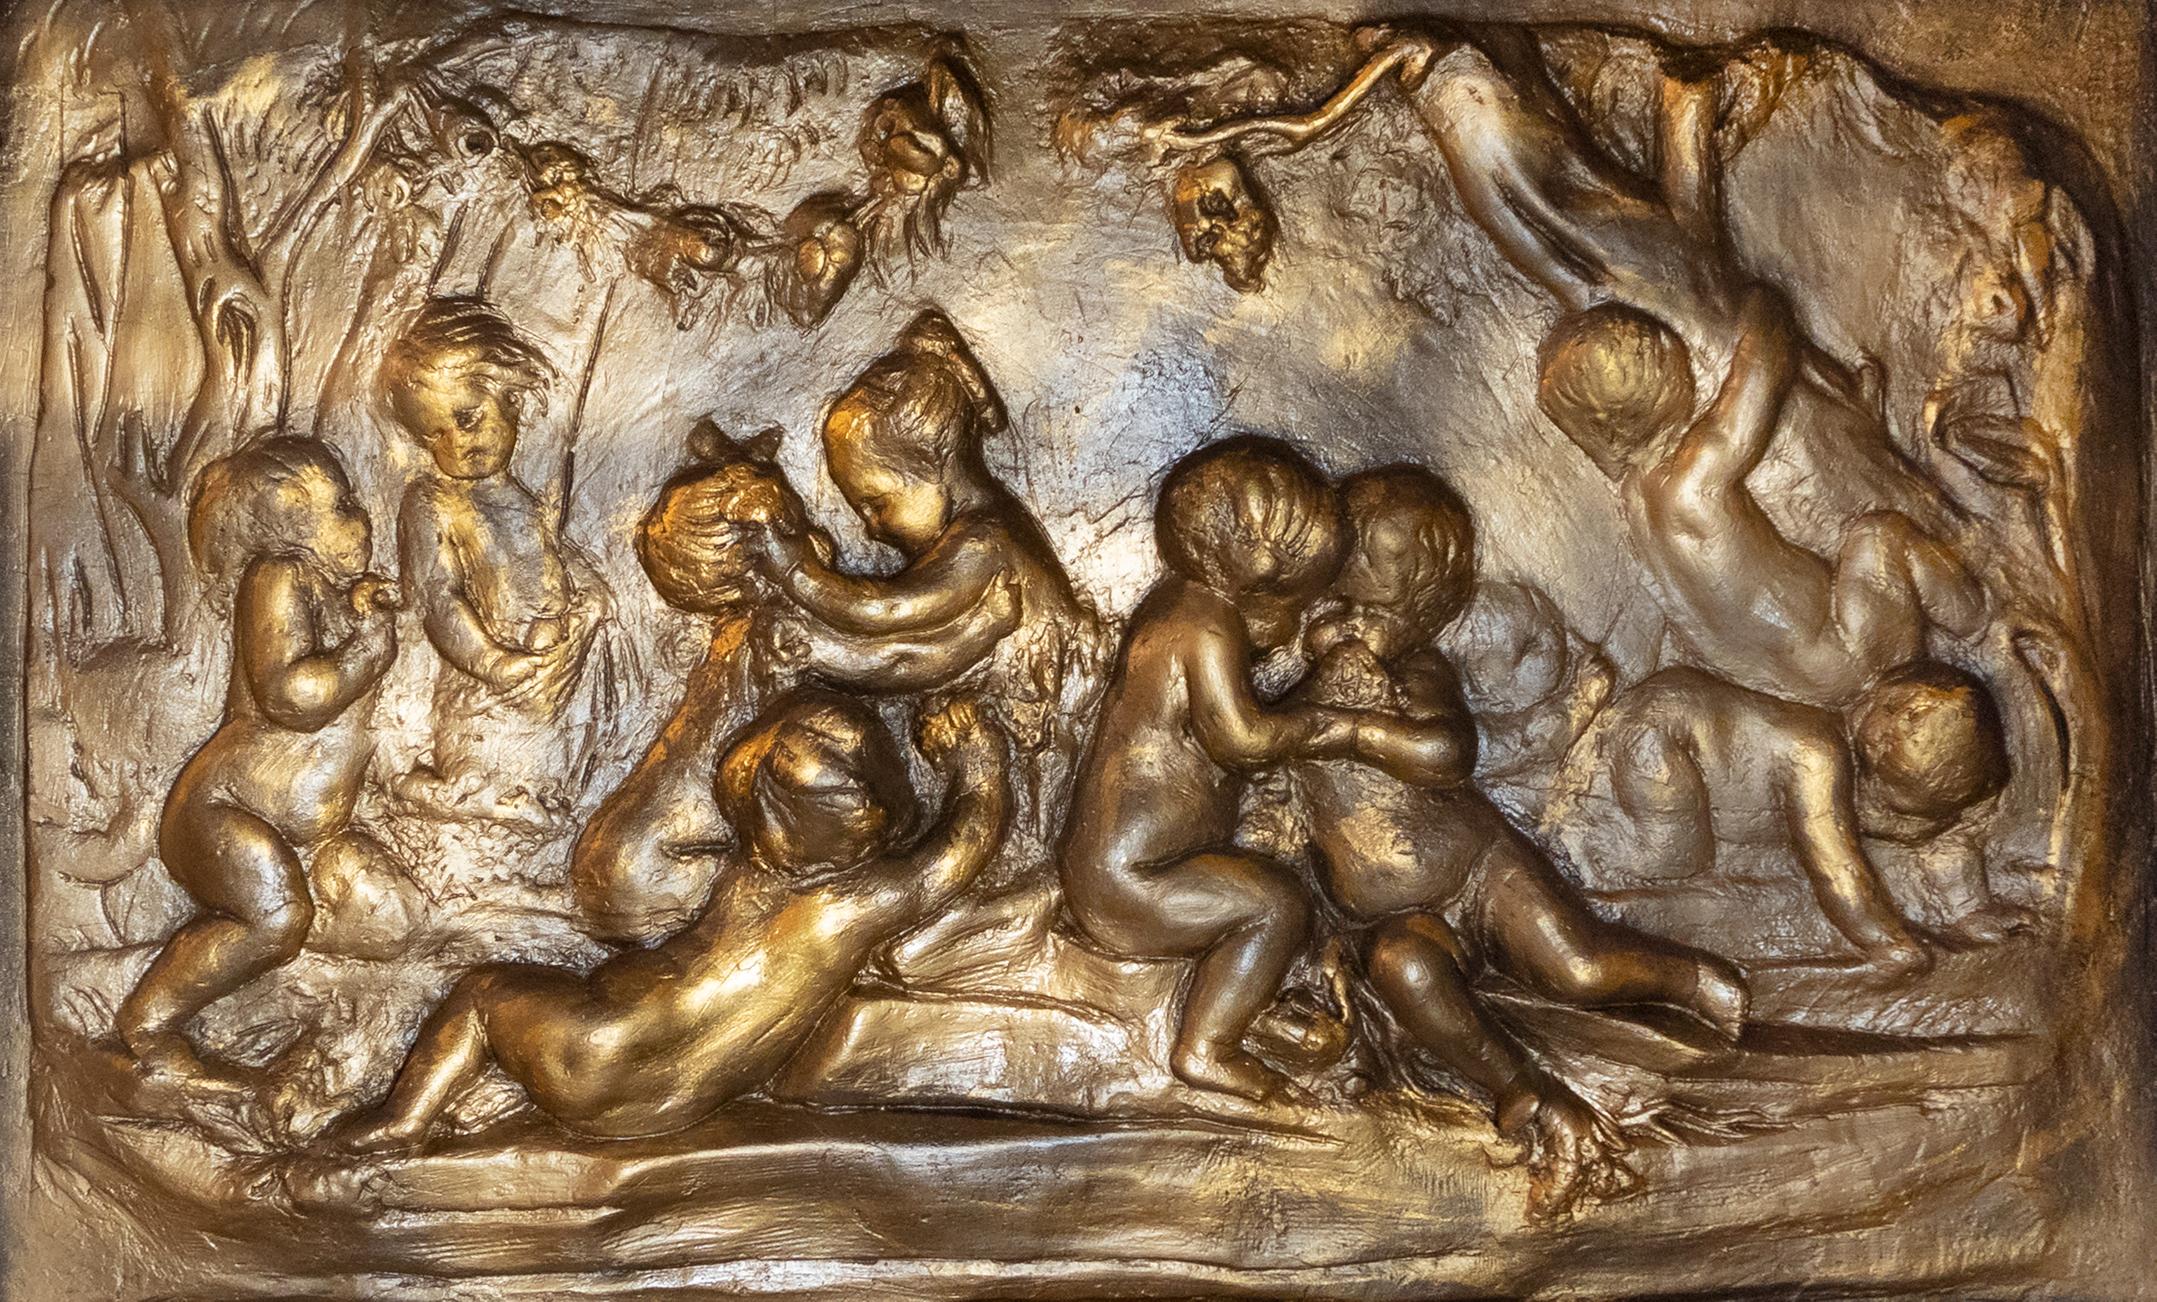 Ein Relief der Nature, Cherubim bewachen den Garten des Paradieses (Eden) nach der Vertreibung von Adam und Eva - inspiriert von den Arbeiten des Meisters Louis-Messidor-Lebon Petitot in Terrakotta und polychromer Keramik.